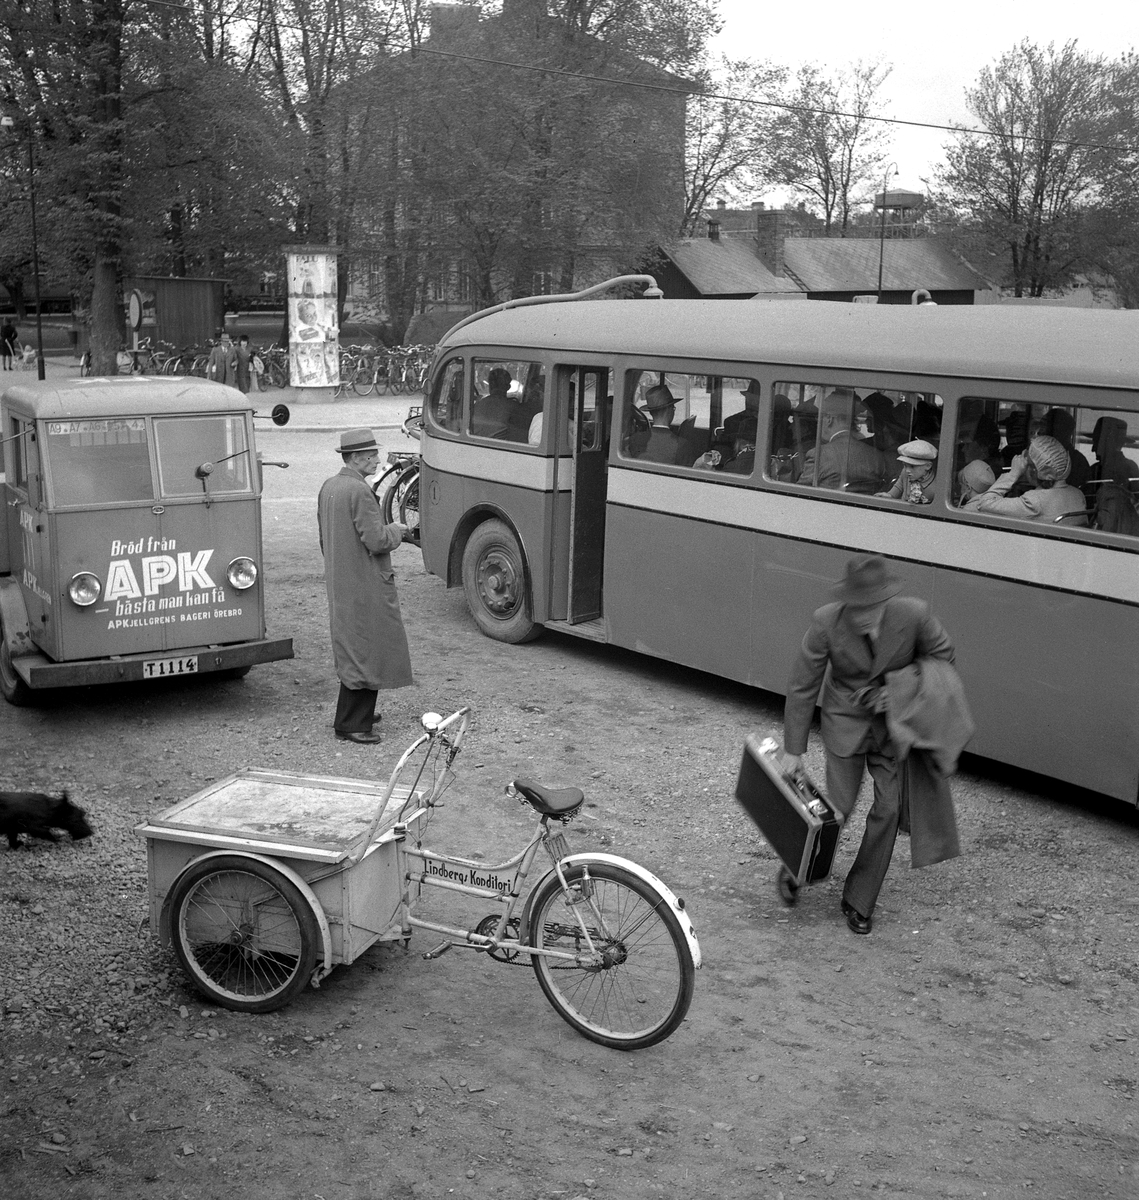 Busstrafik.
AB Mellansvensk Omnibusstrafik. Bröd från APK bageri. Cykel från lindbergs konditori.